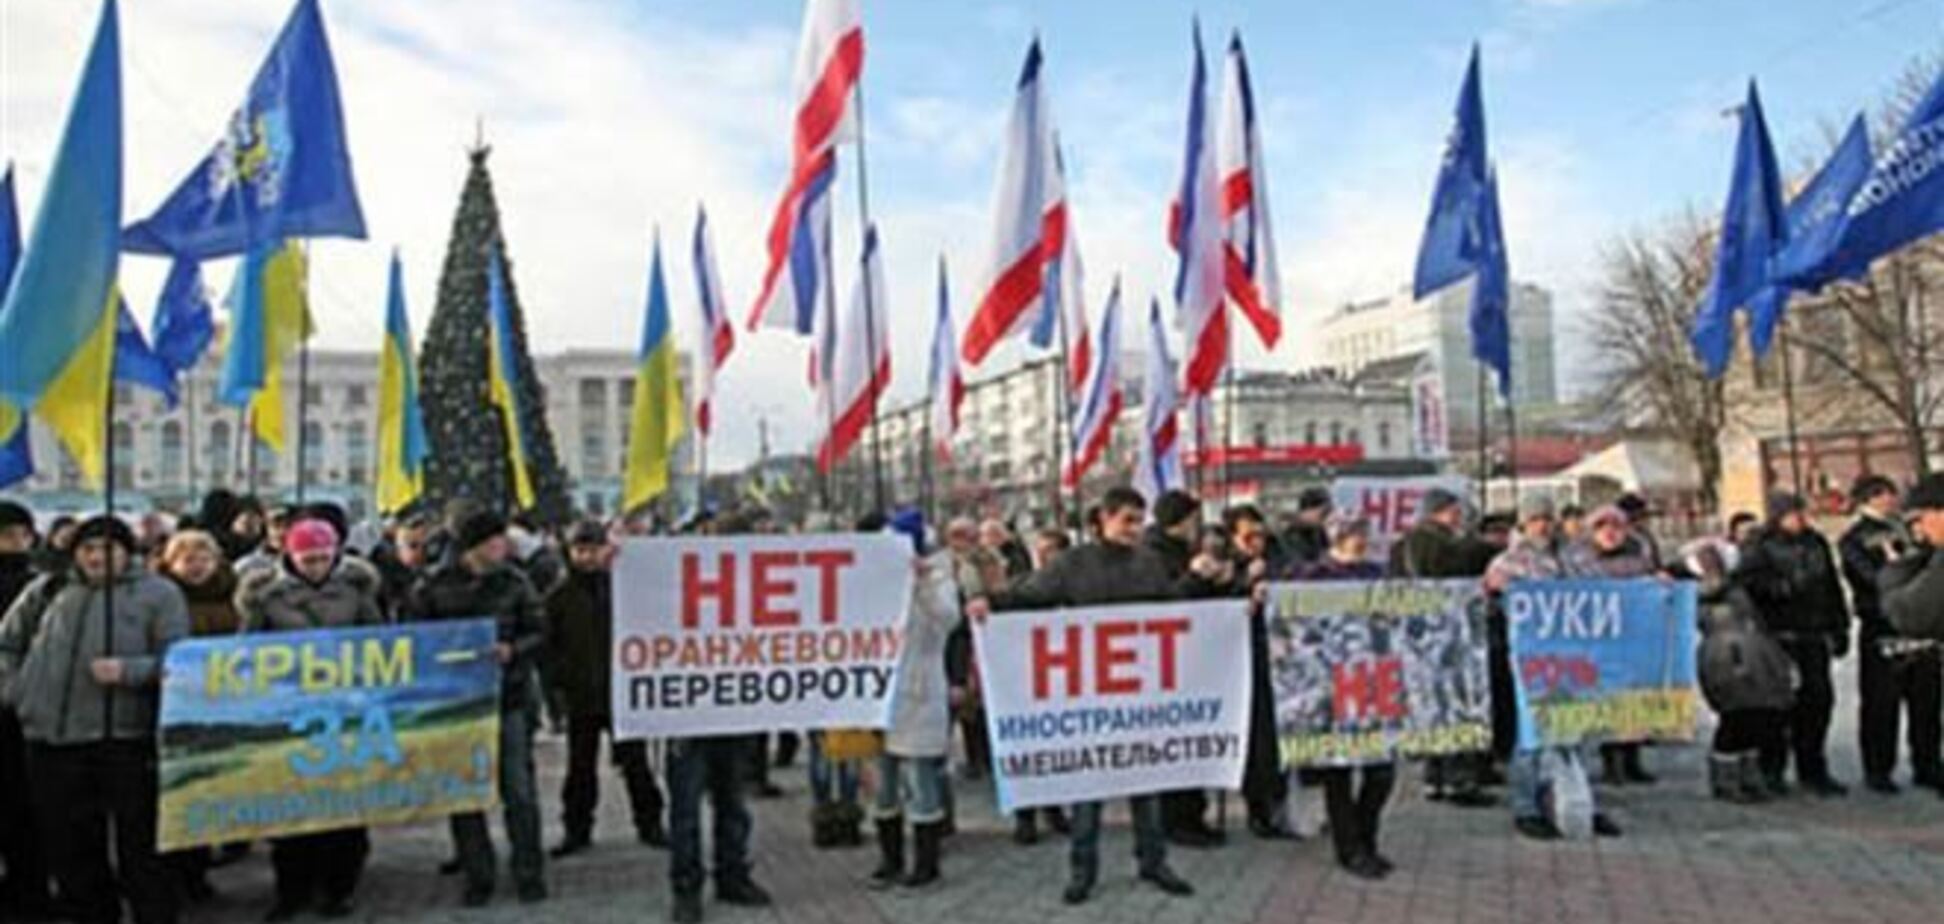 Колонна с флагами Крыма и Партии регионов идет на митинг в Мариинский парк